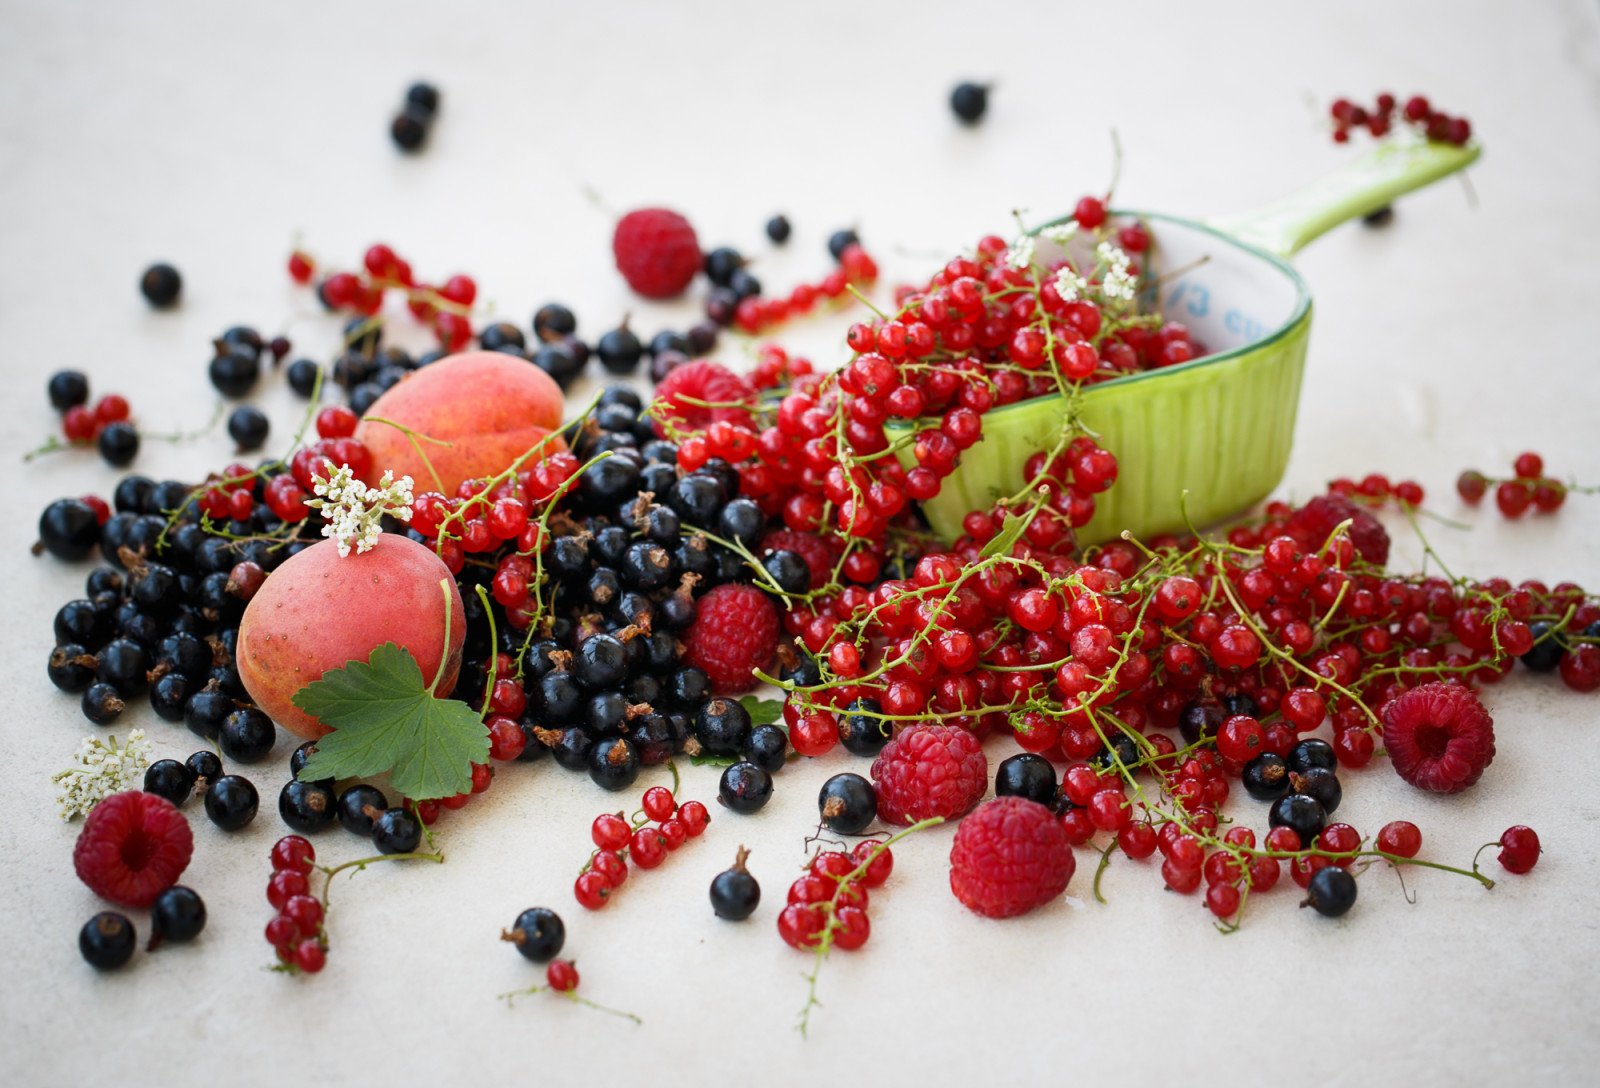 đen, màu đỏ, món ăn, quả mọng, dâu rừng, quả mơ, trái cây, cây phúc bồn tử